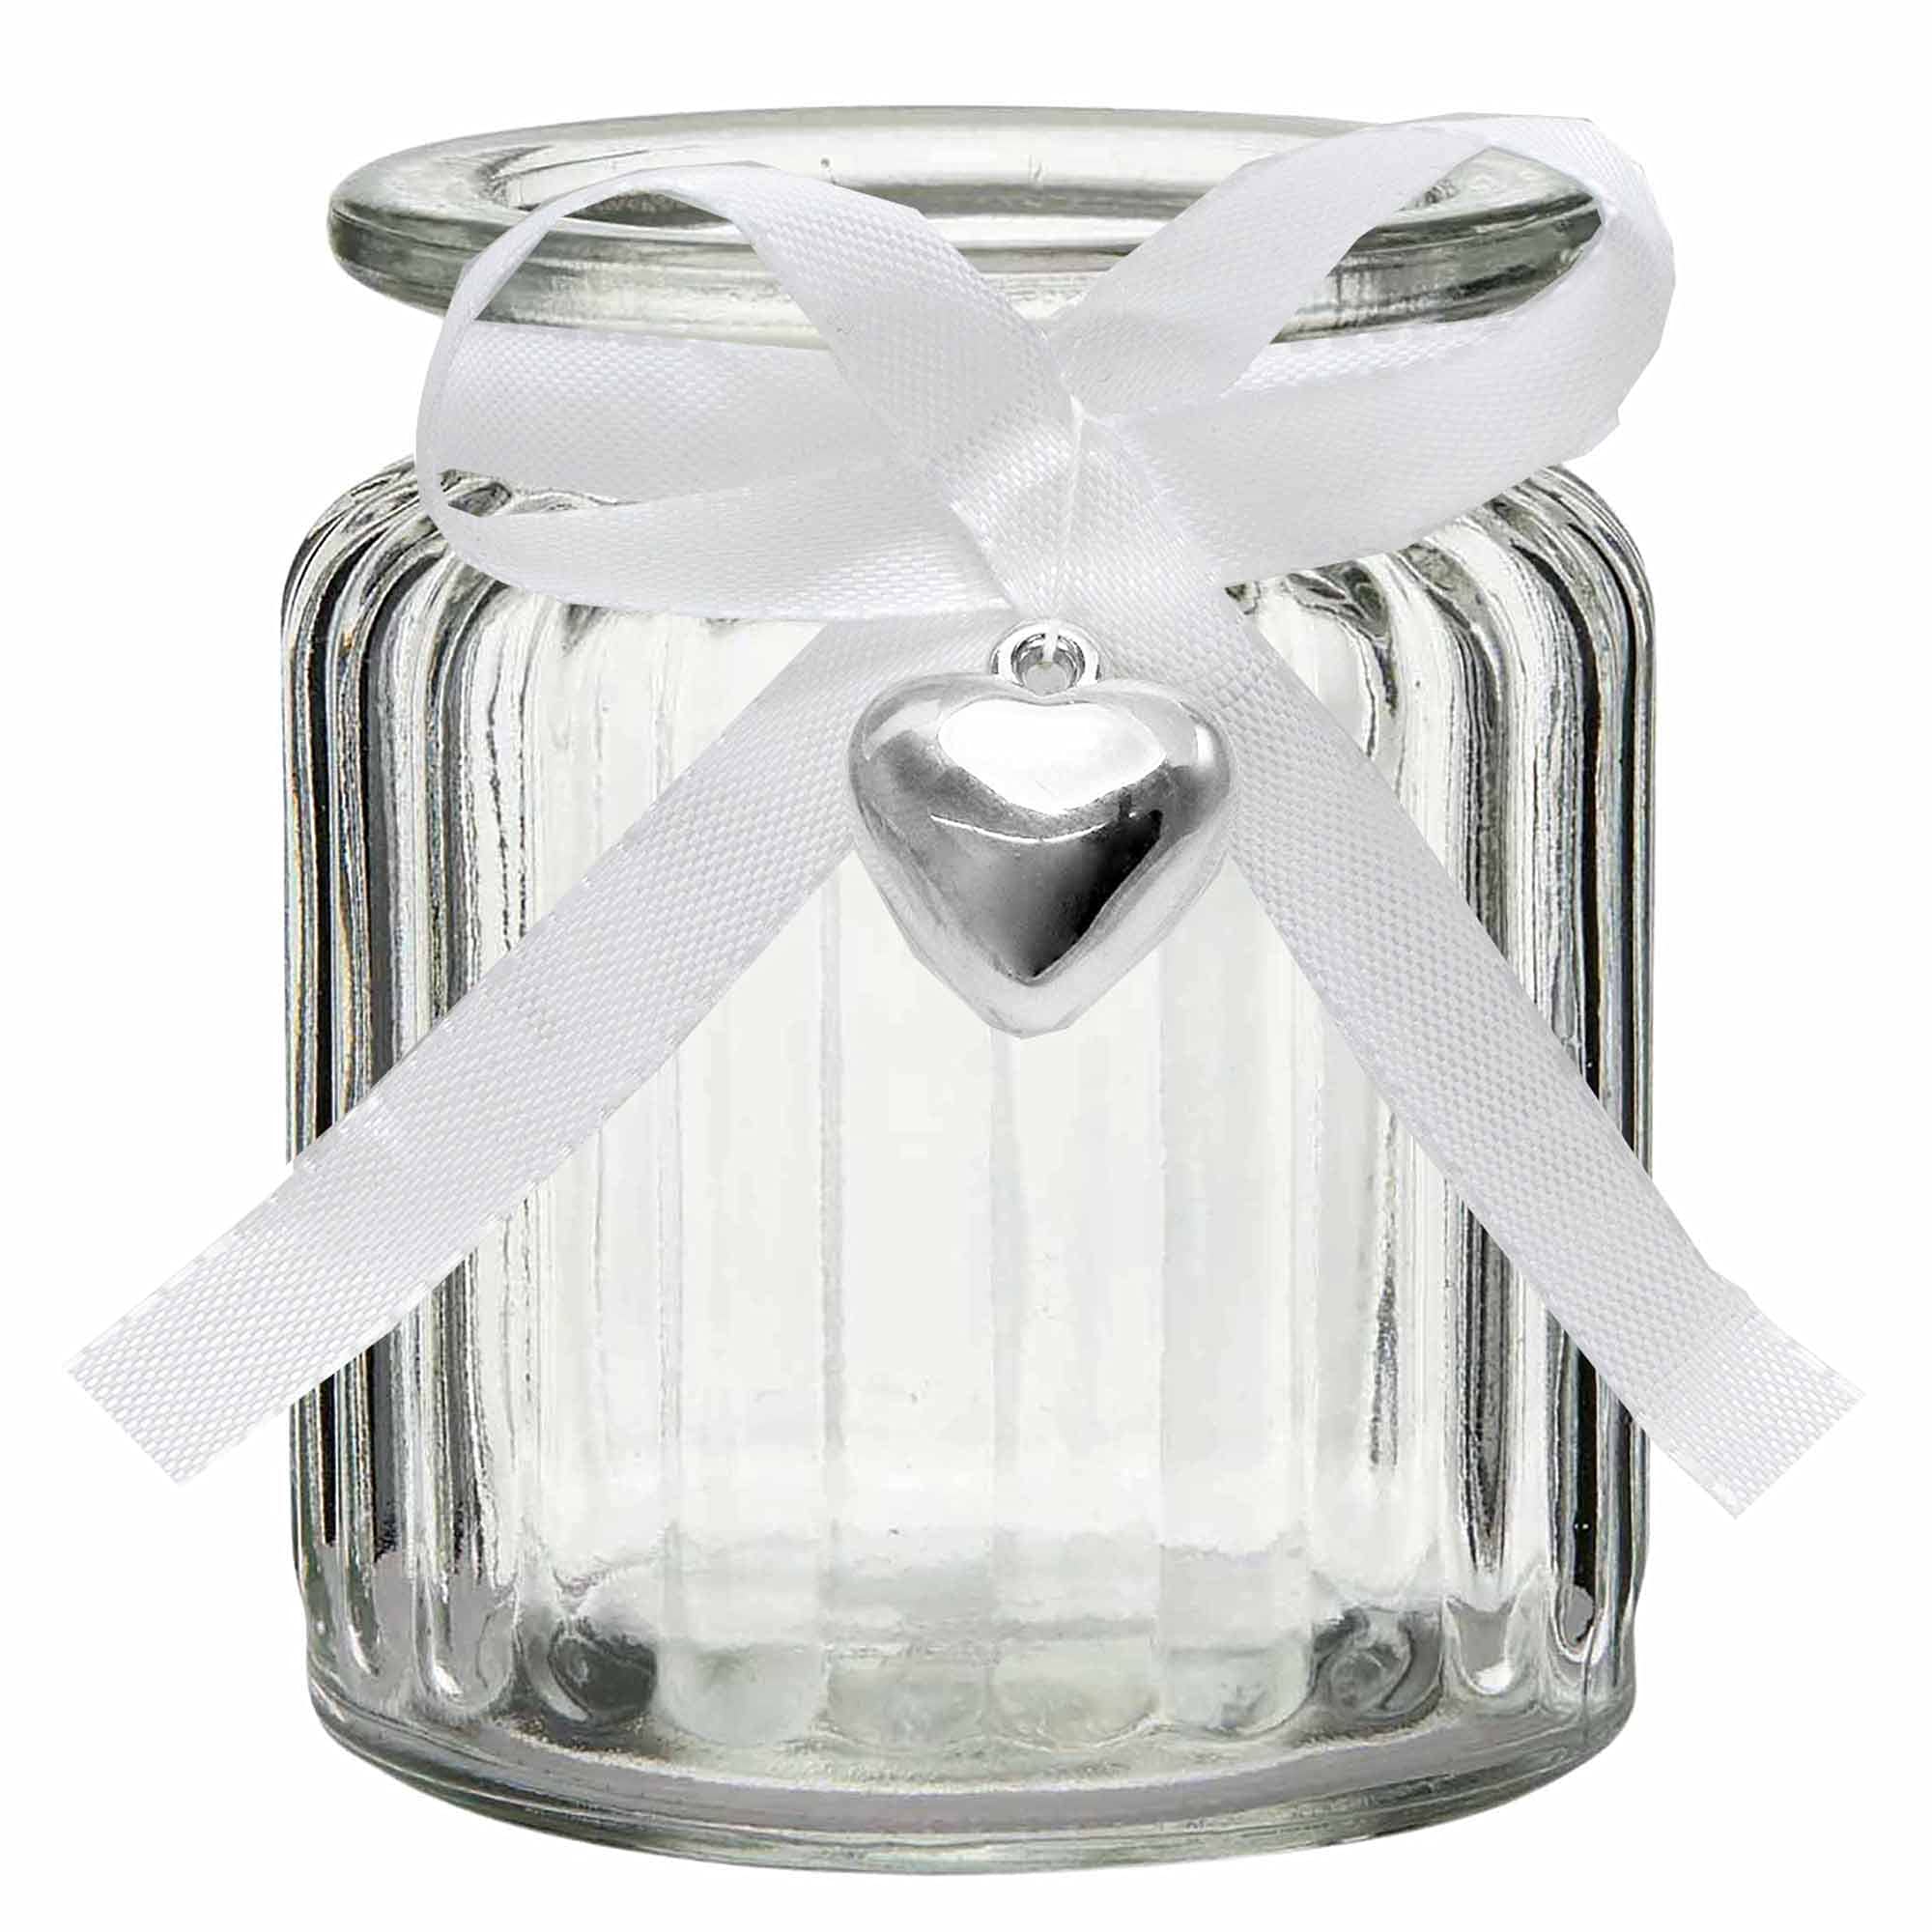 12 x Windlichter Jana aus Glas H 9 cm inkl. Dekoband + 12 Herzen mit Öse zum Verzieren - Teelichtgläser Vase - Glaswindlichter